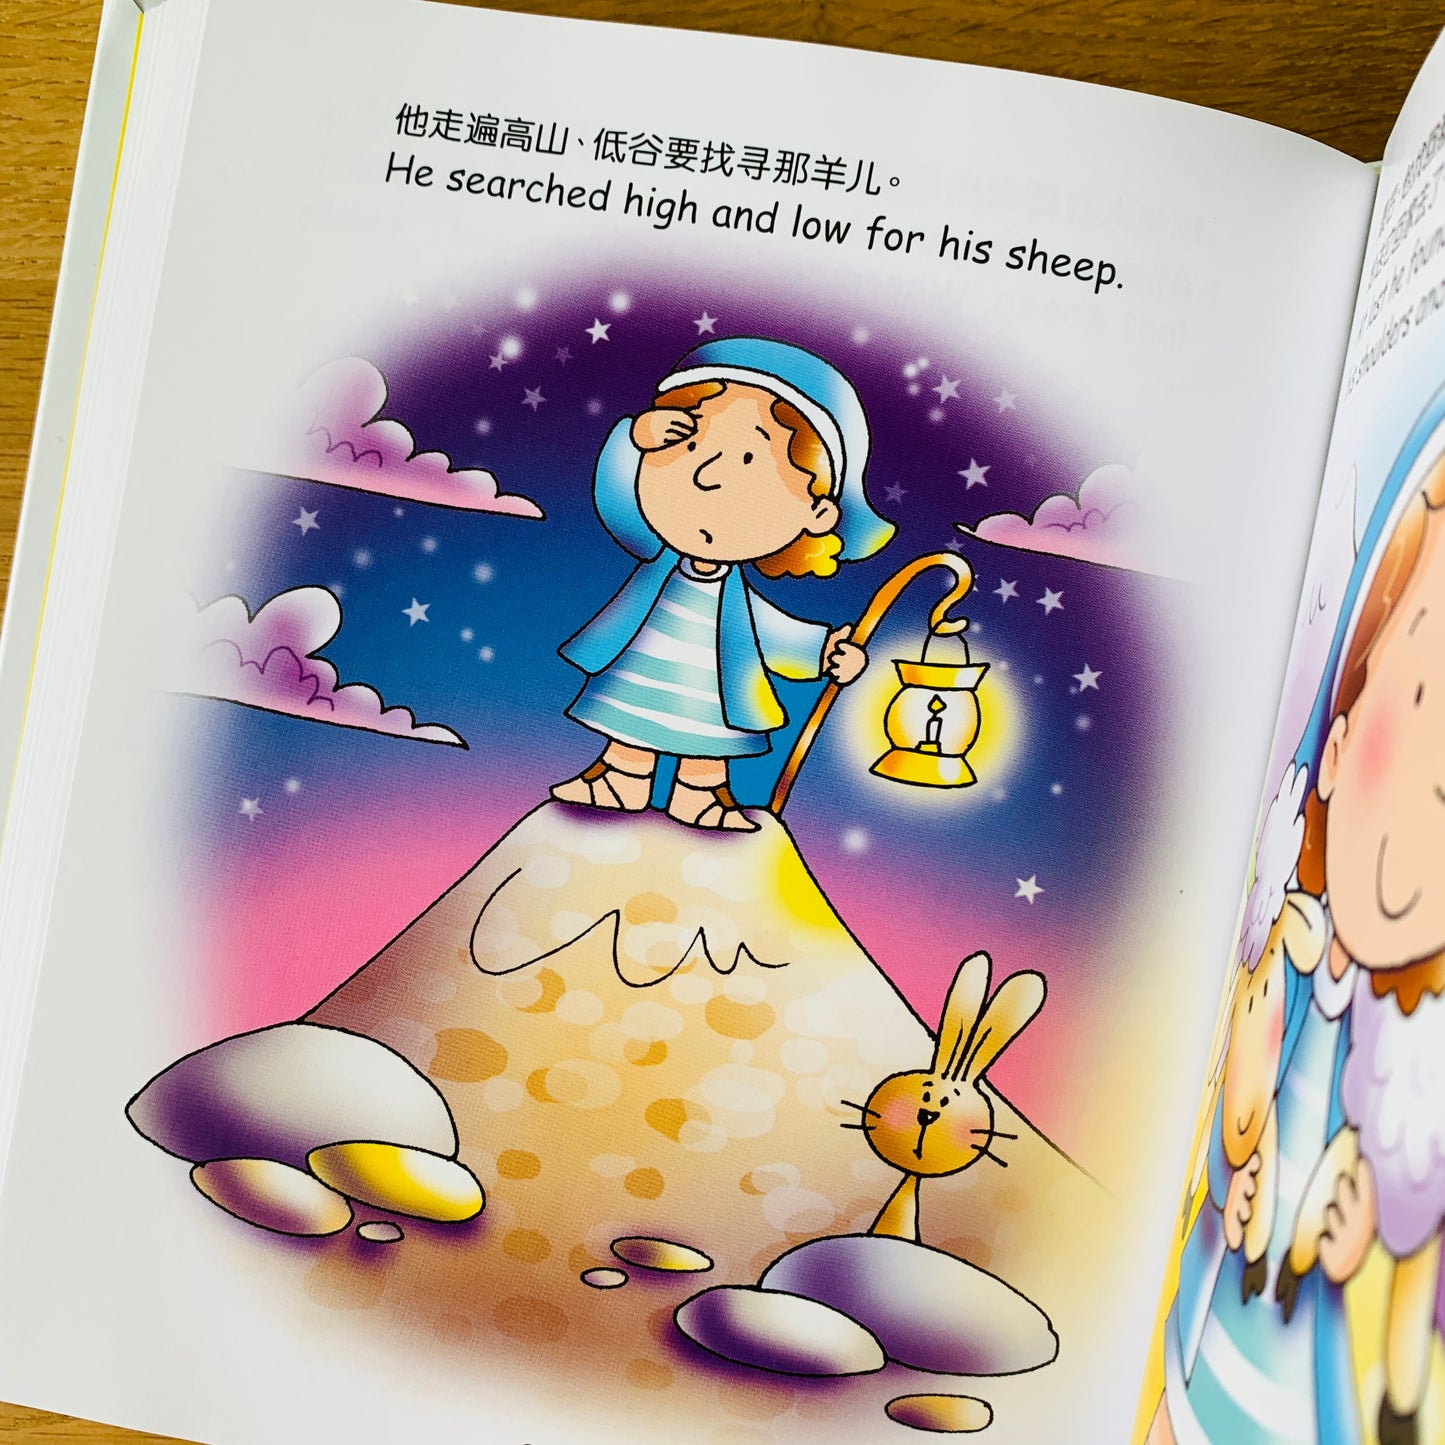 小淘气圣经 Bible For Toddlers (Bilingual English-Chinese)